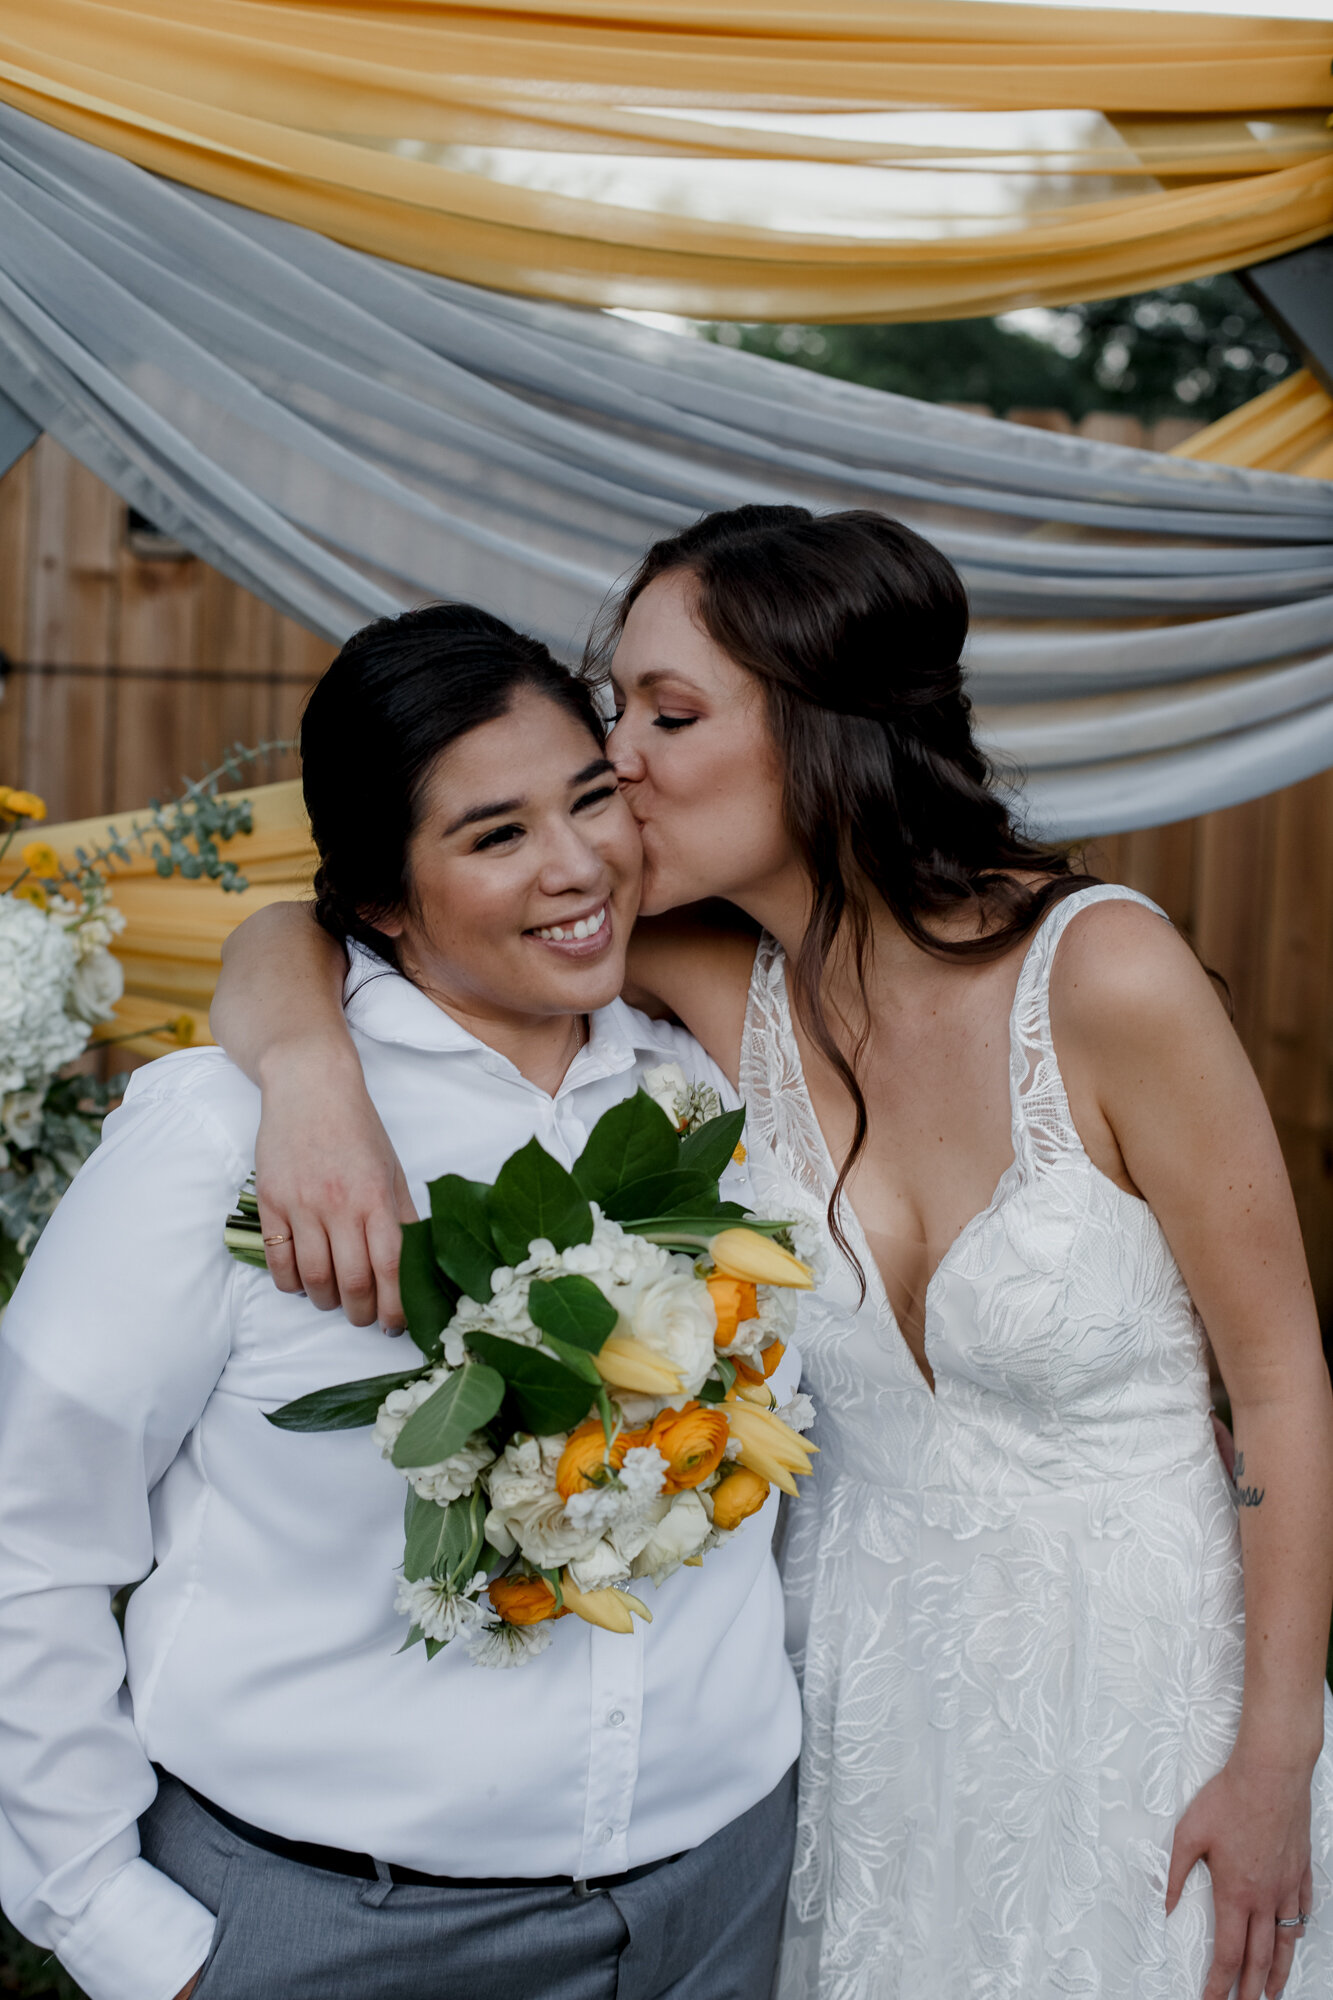 Cozy Laid-Back LGBTQ+ Backyard Wedding. Bride kisses bride holding yellow flowers.